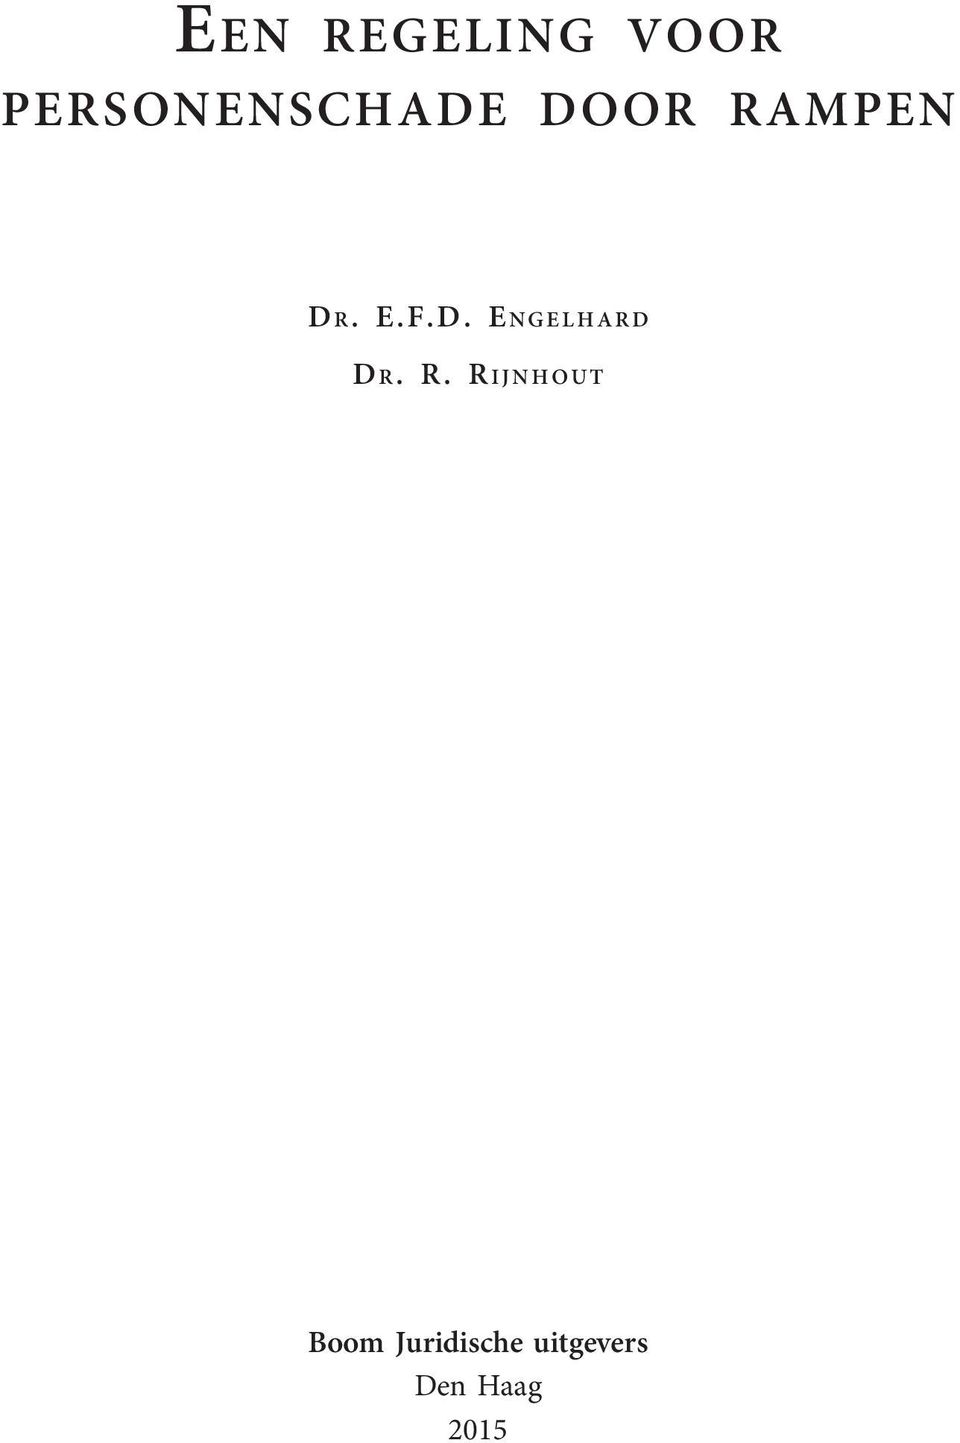 E.F.D. ENGELHARD D R.